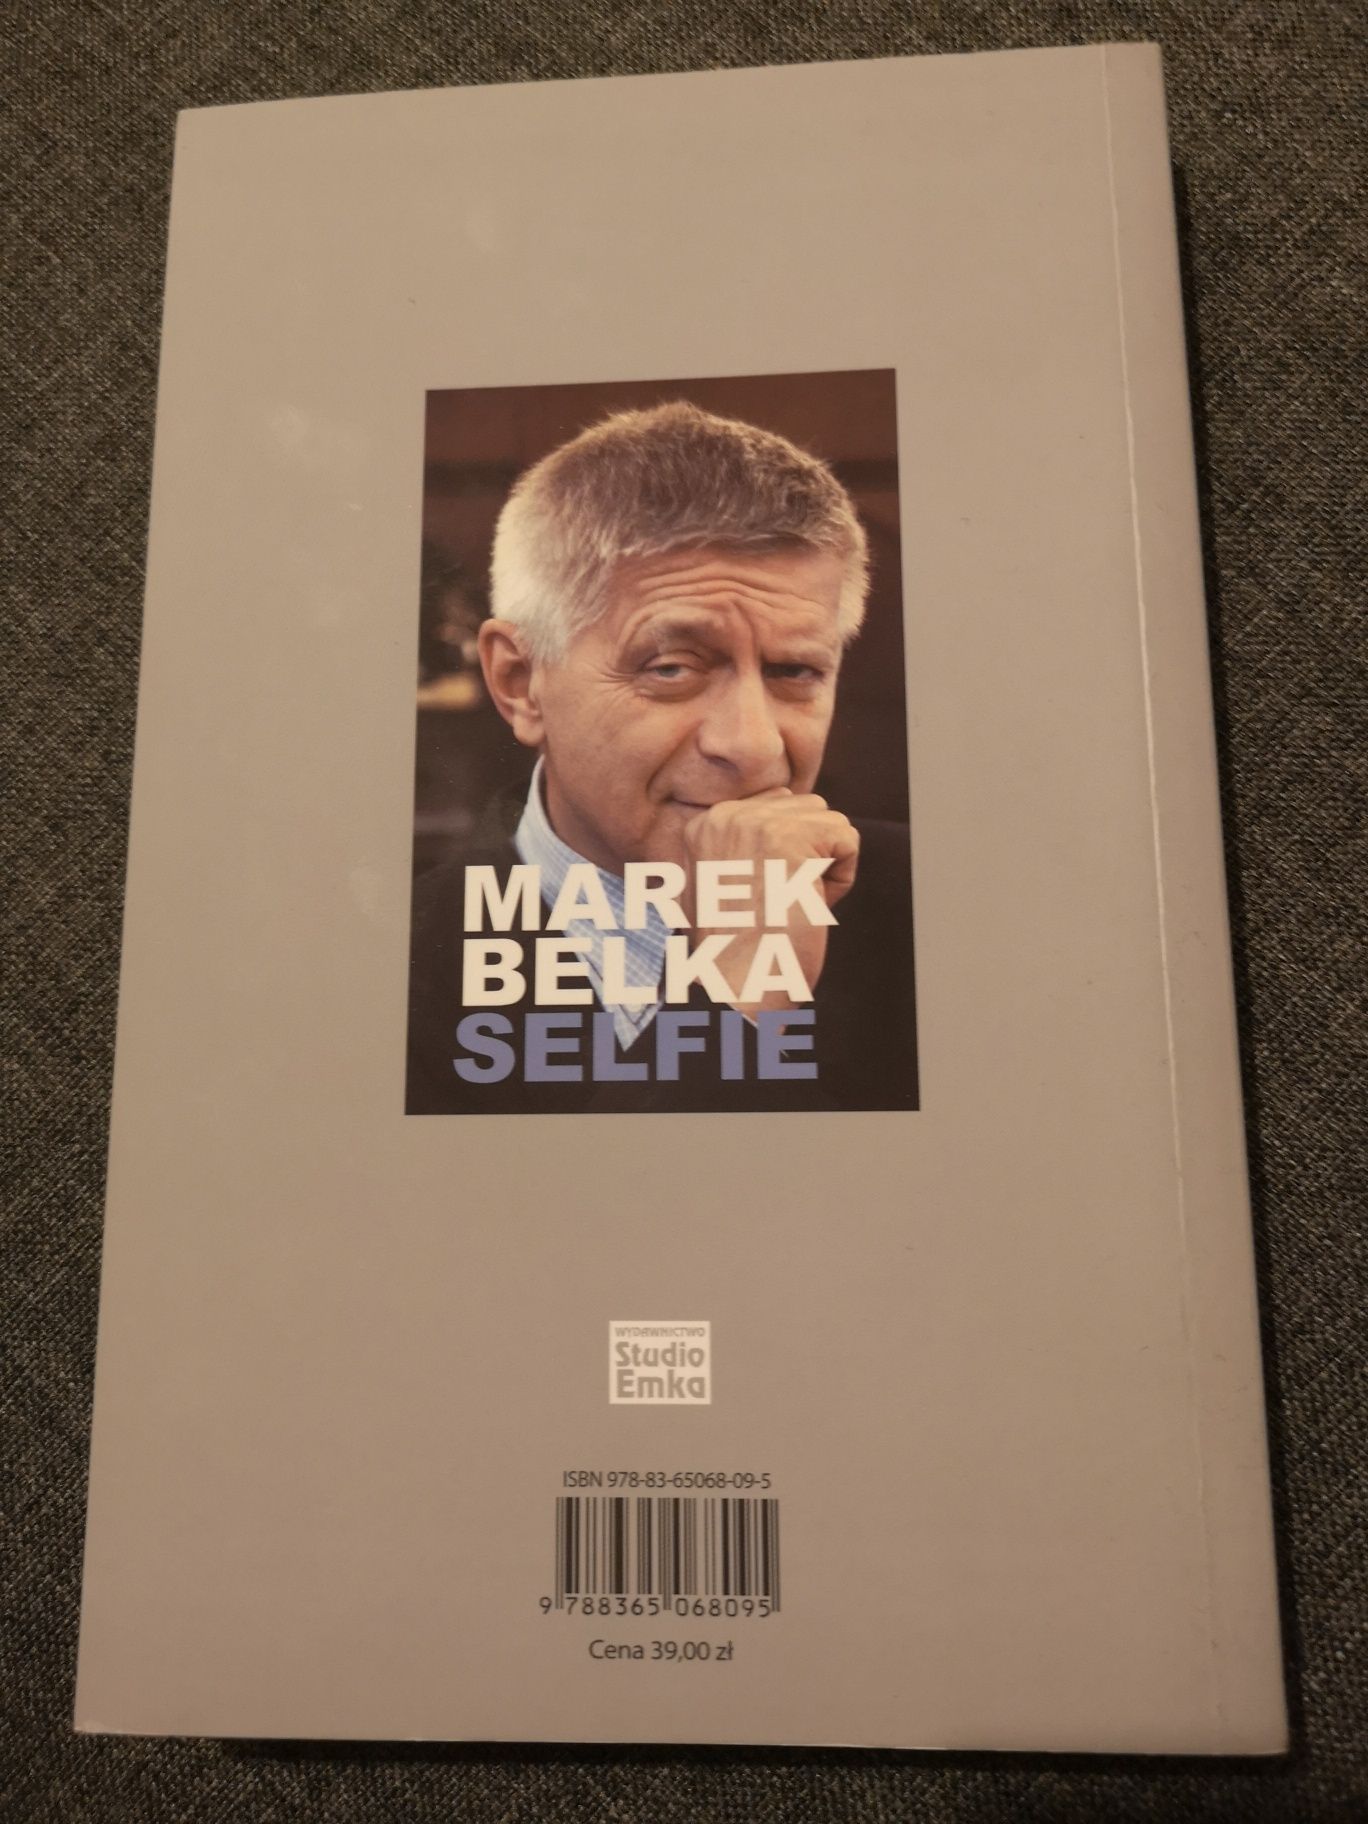 Marek Belka selfie